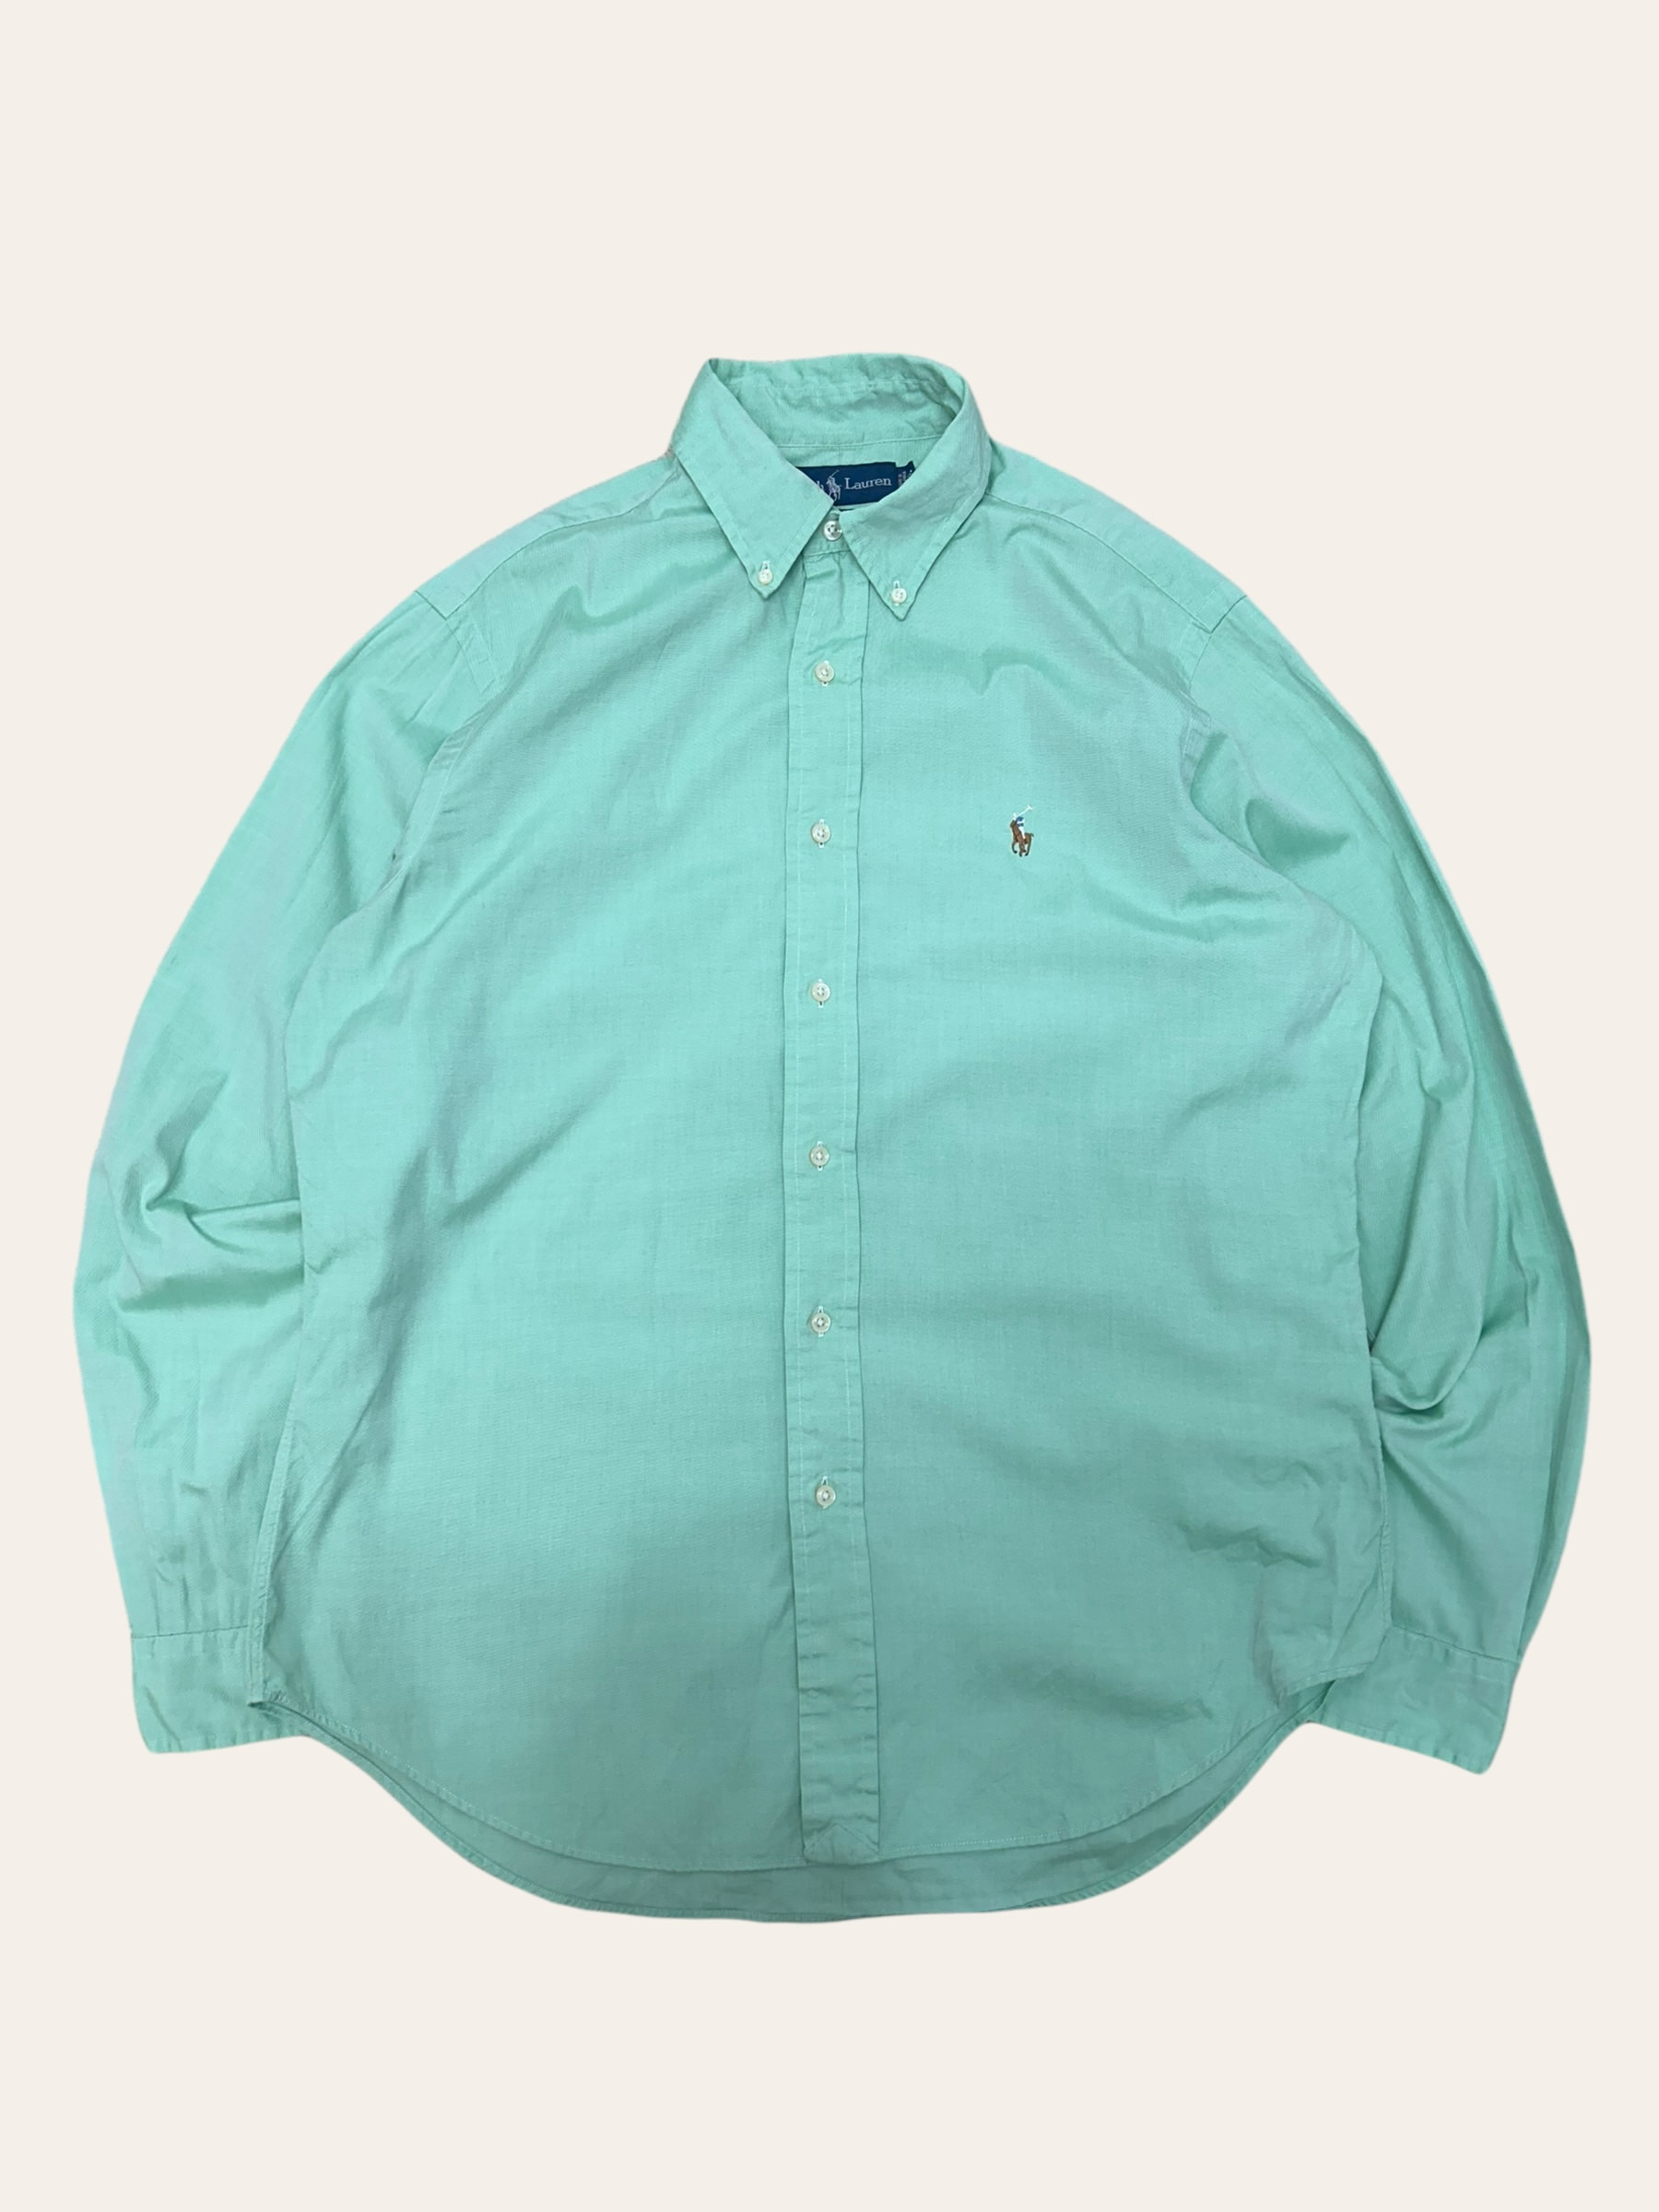 (From USA)Polo ralph lauren light green oxford shirt 15.5